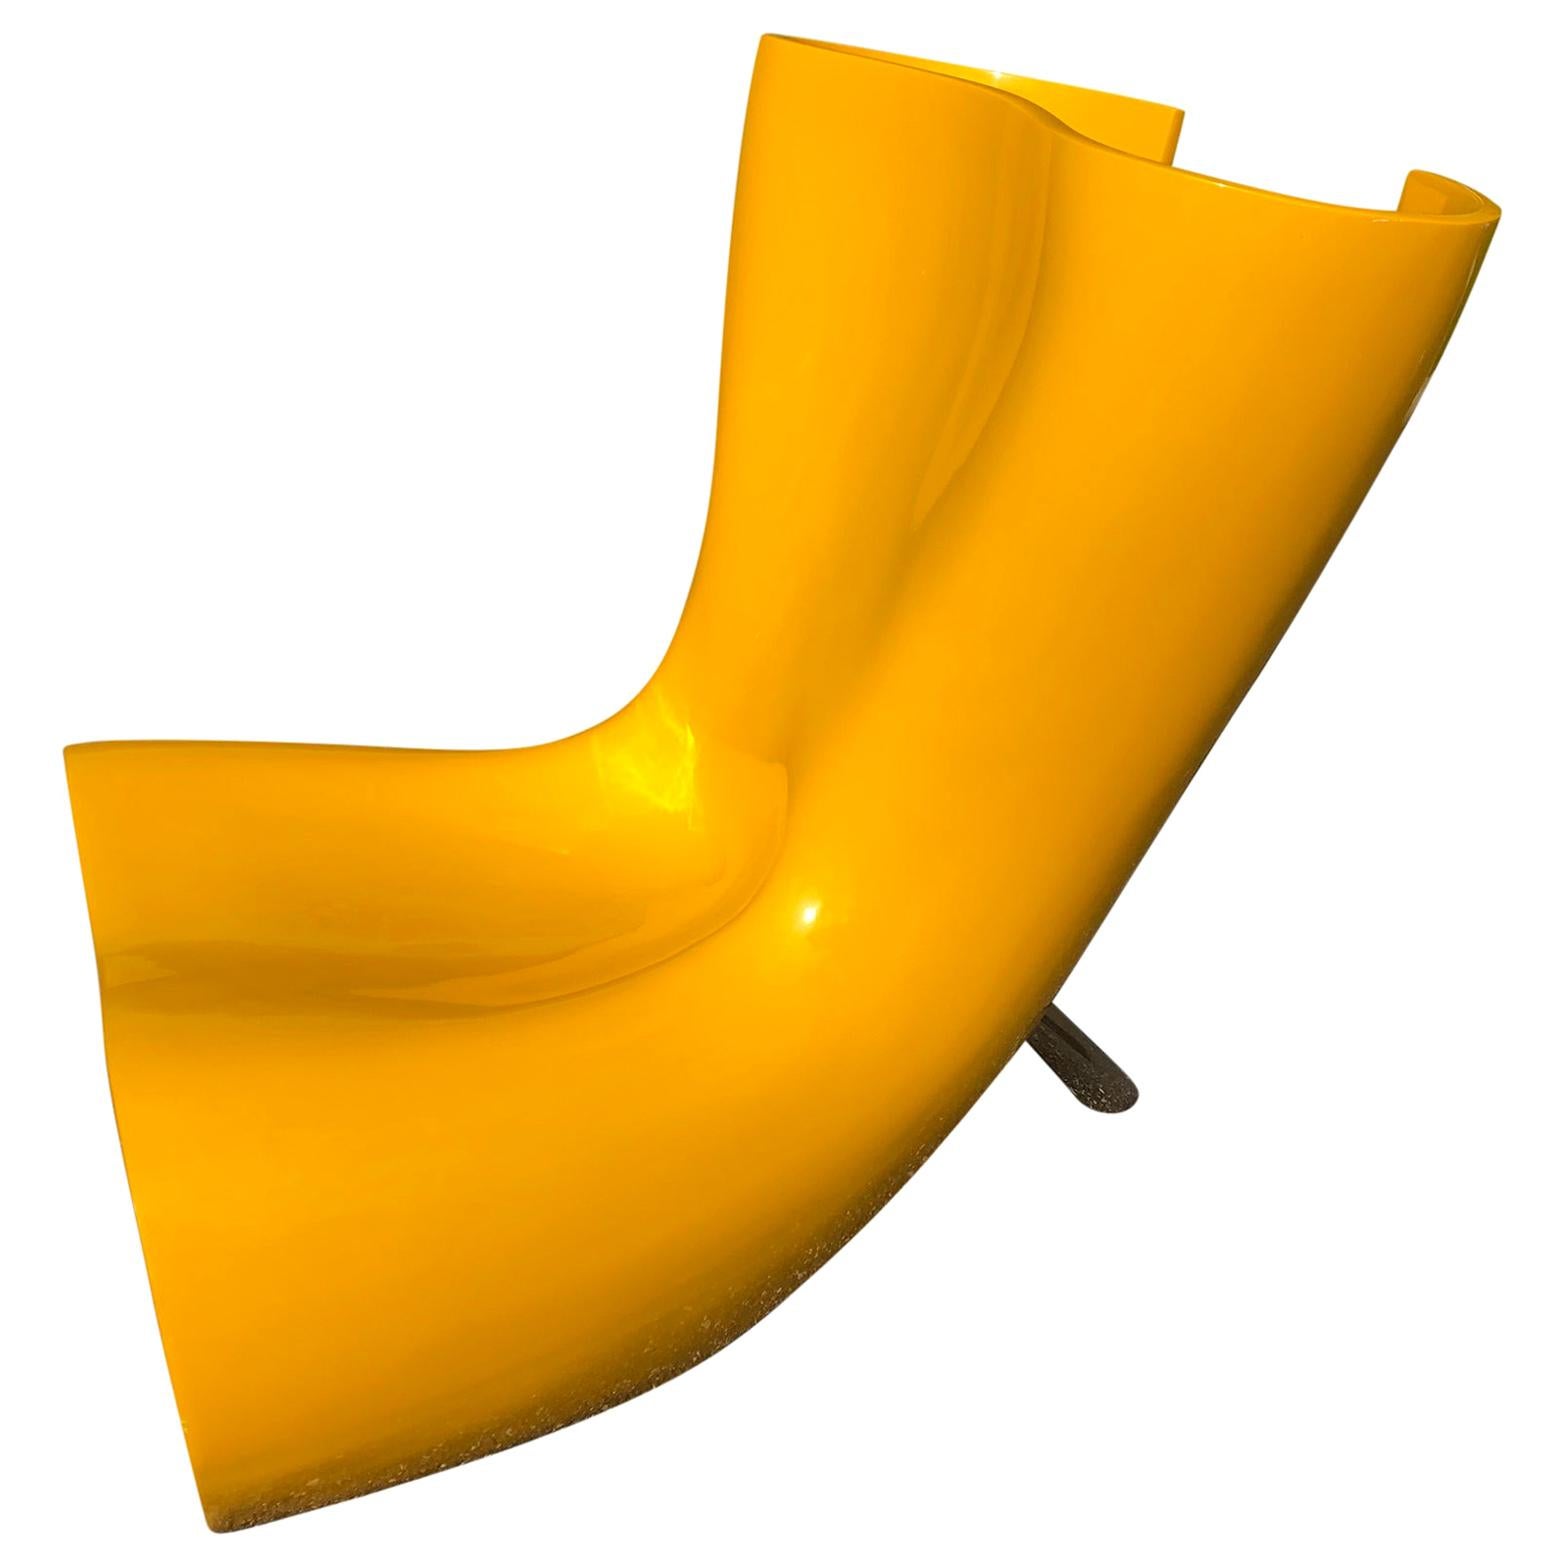 Marc Newson Felt Chair in Yellow Fiberglass Shell